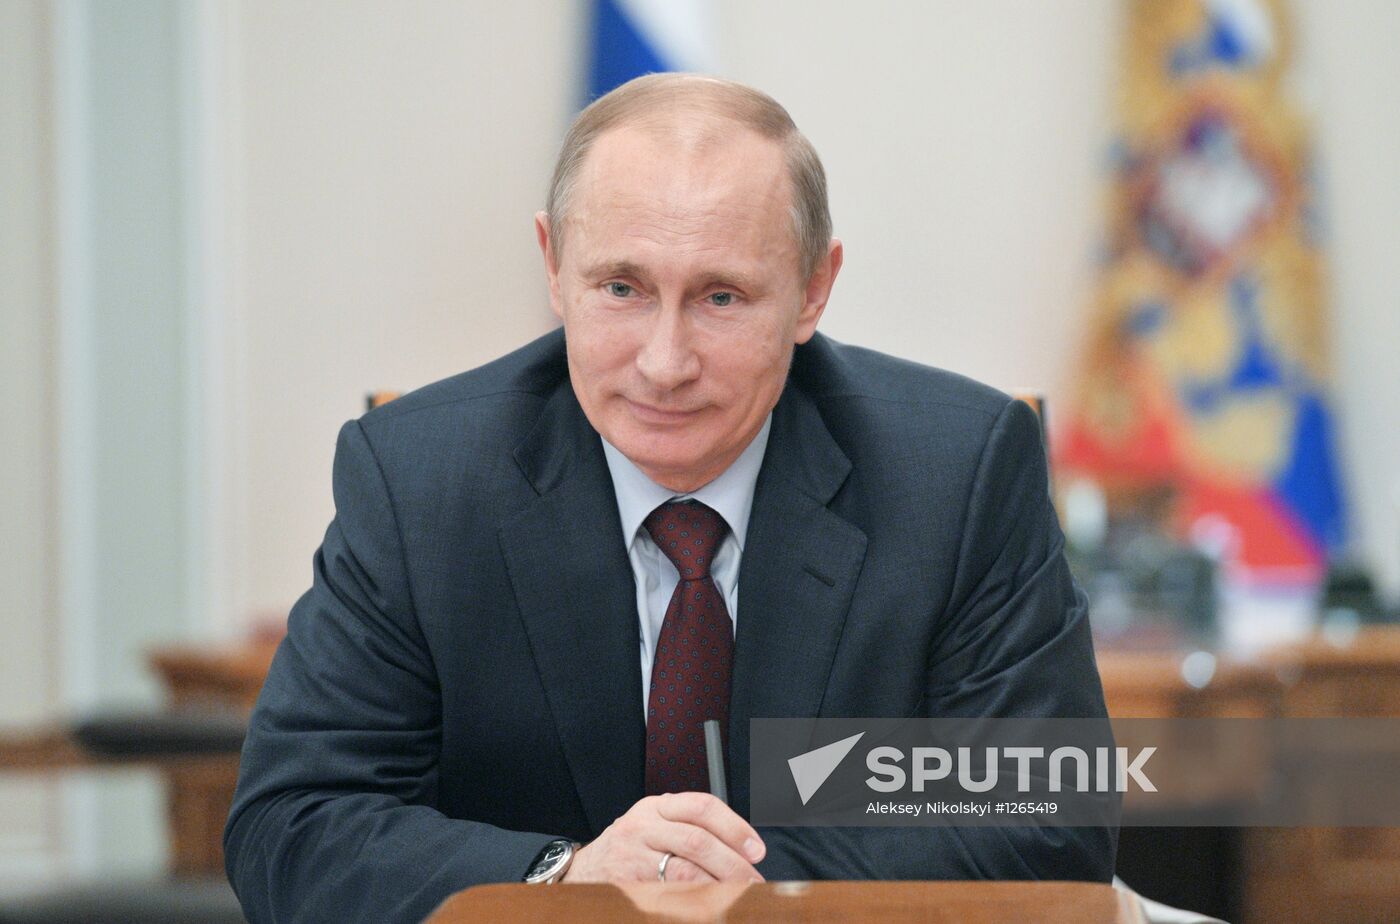 President Vladimir Putin at Security Council meeting